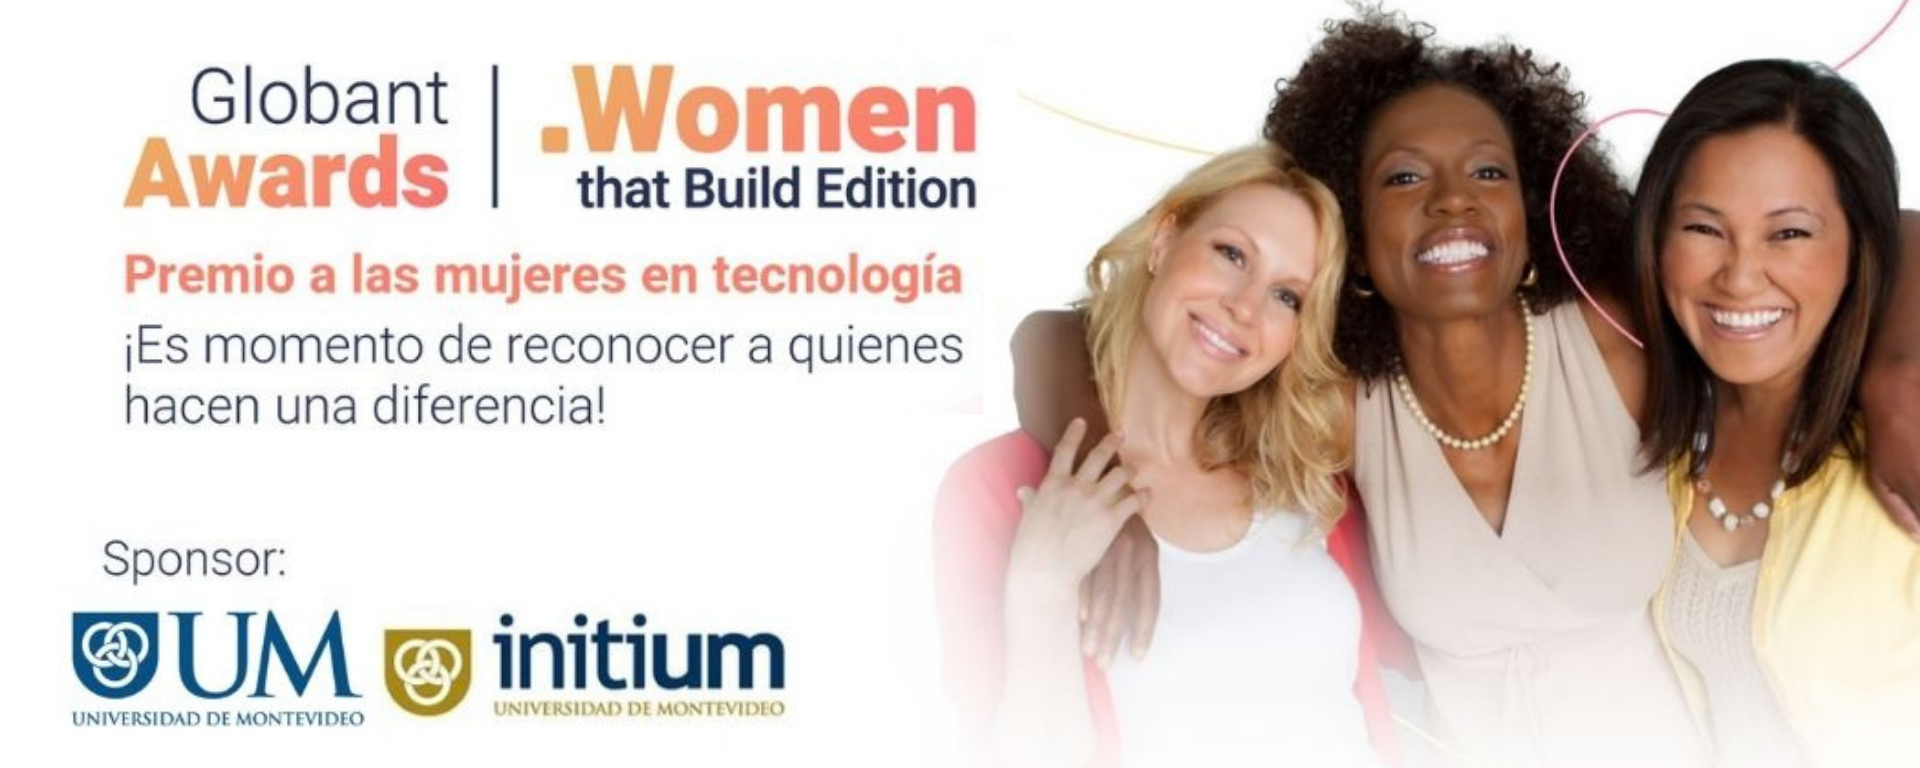 UM apoya premio global para reconocer a las mujeres líderes en tecnología 